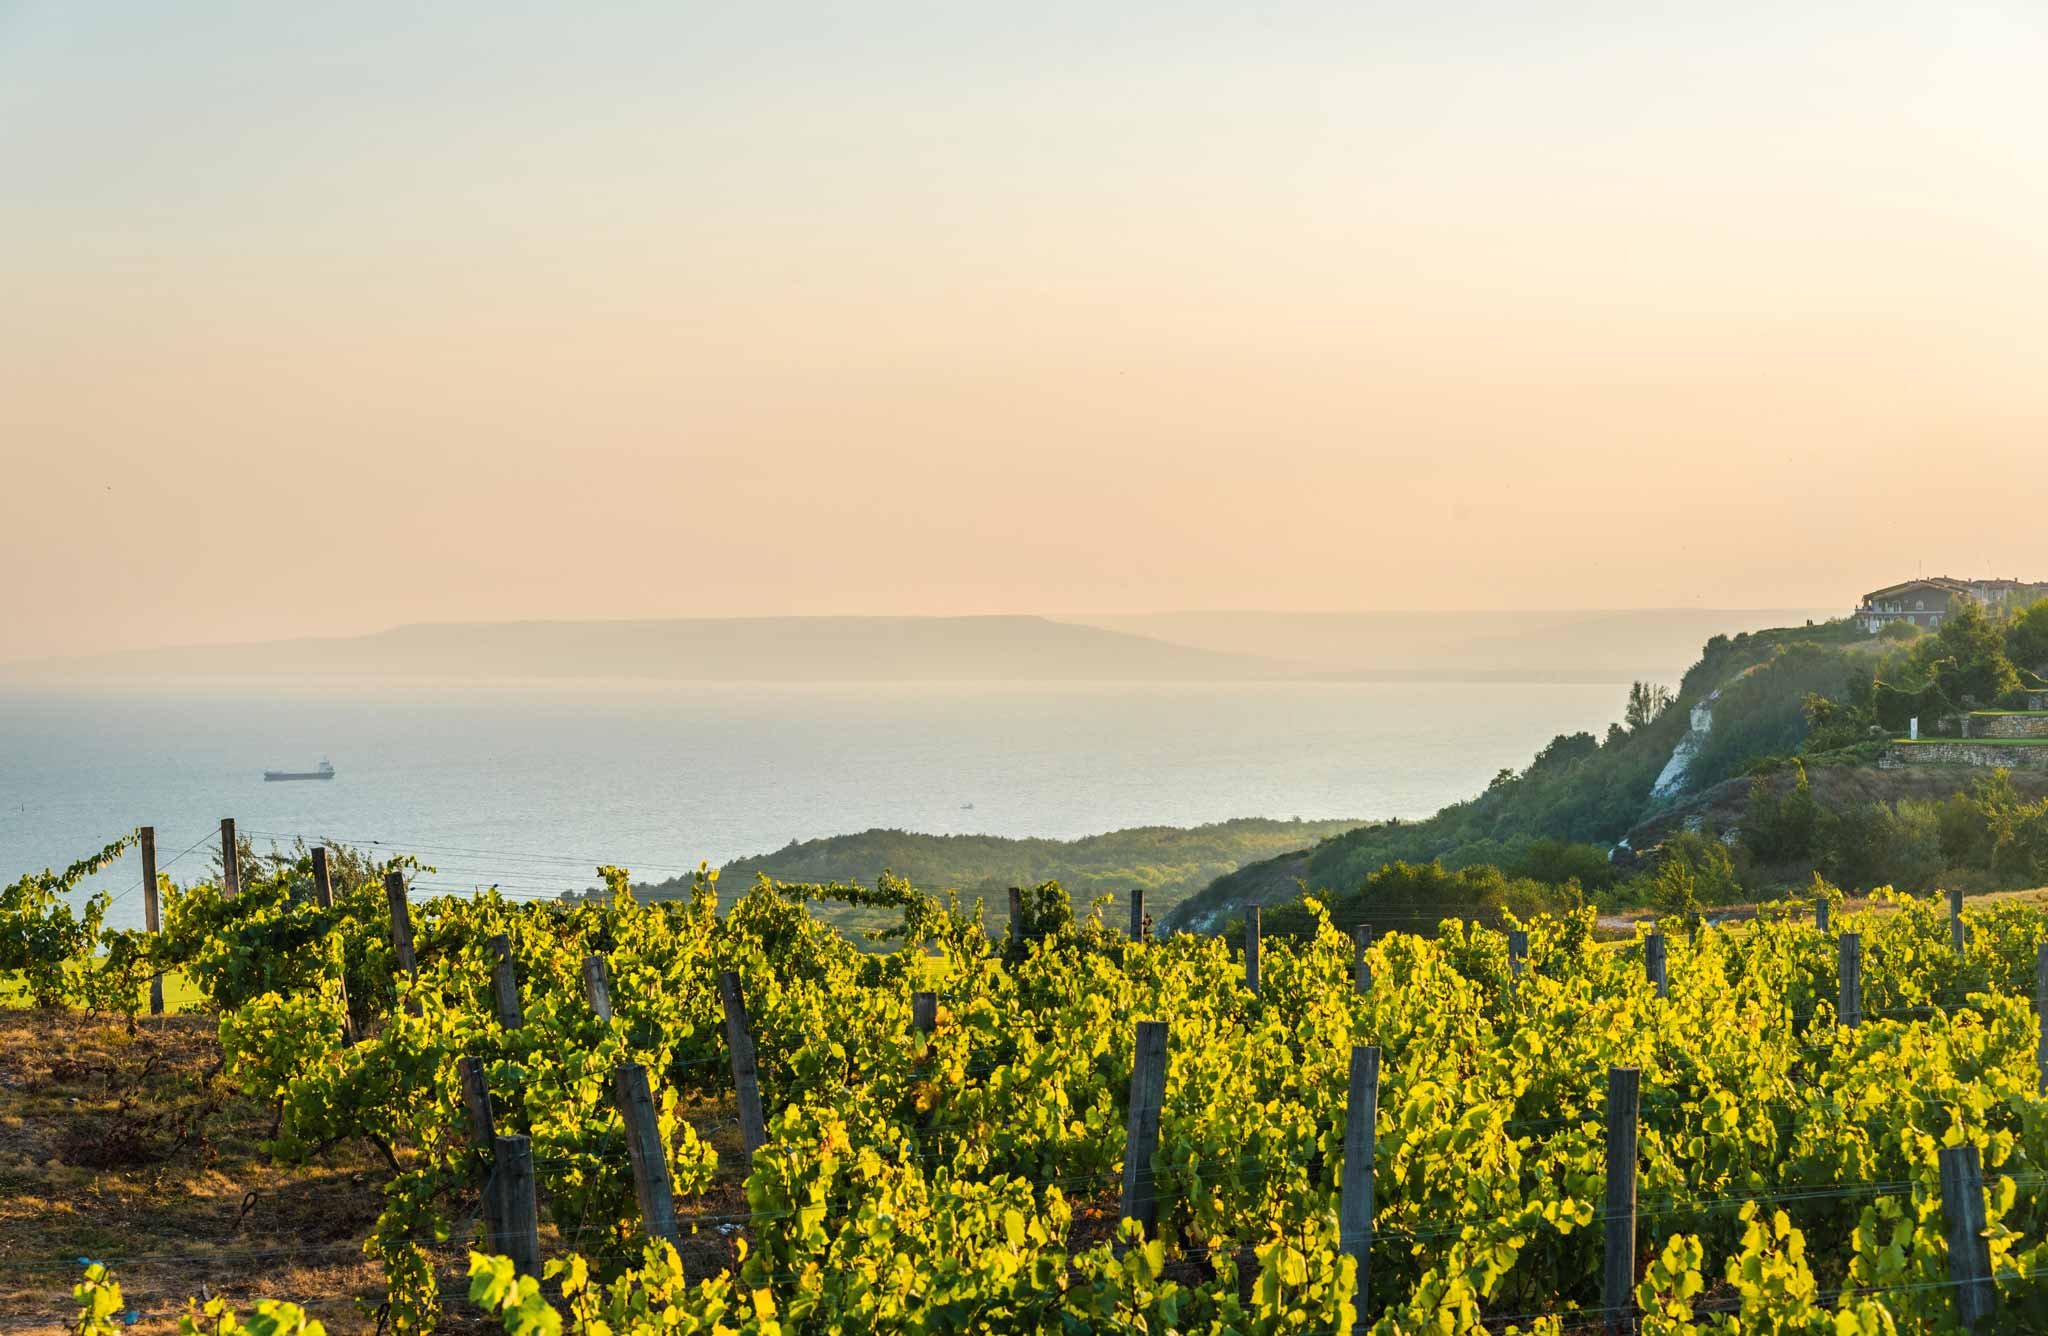 Weinbau am Mittelmeer: Bereits seit der Antike ist Europas größtes Meer der Taktgeber für das größte und wichtigste Trendlabor des Weinbaus in der Alten Welt.